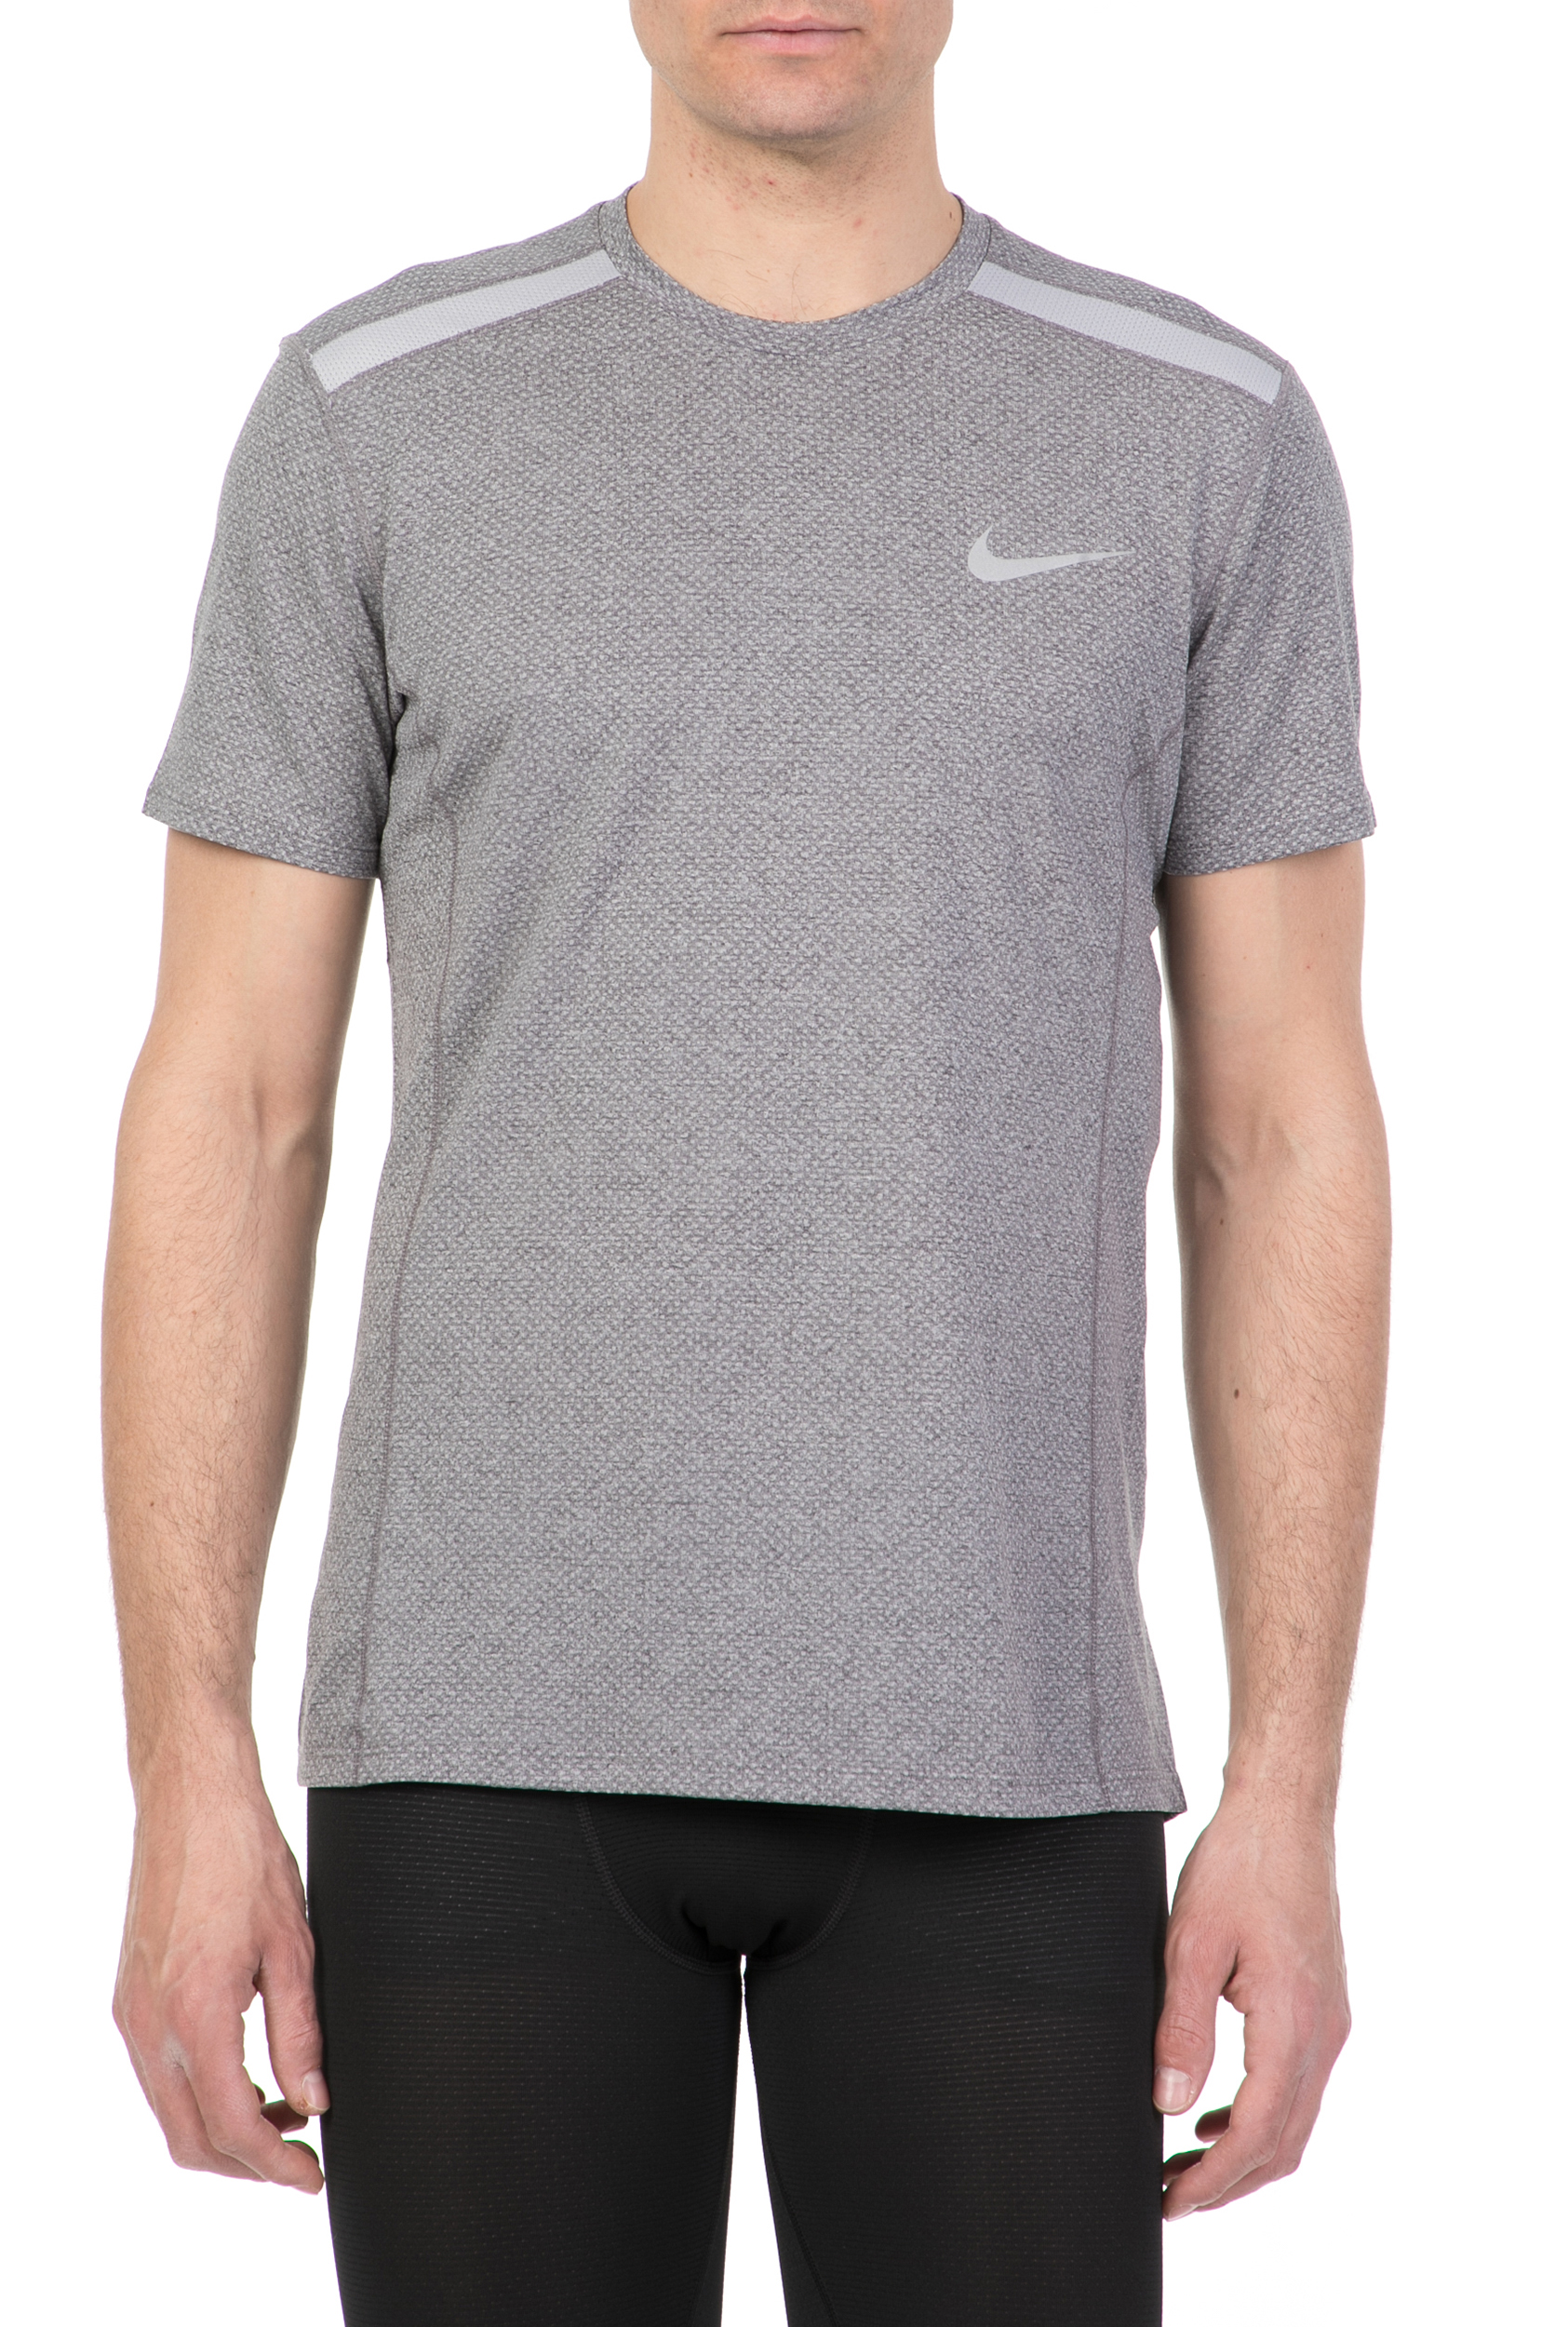 Ανδρικά/Ρούχα/Αθλητικά/T-shirt NIKE - Ανδρική κοντομάνικη μπλούζα NIKE COOL MILER TOP SS γκρι